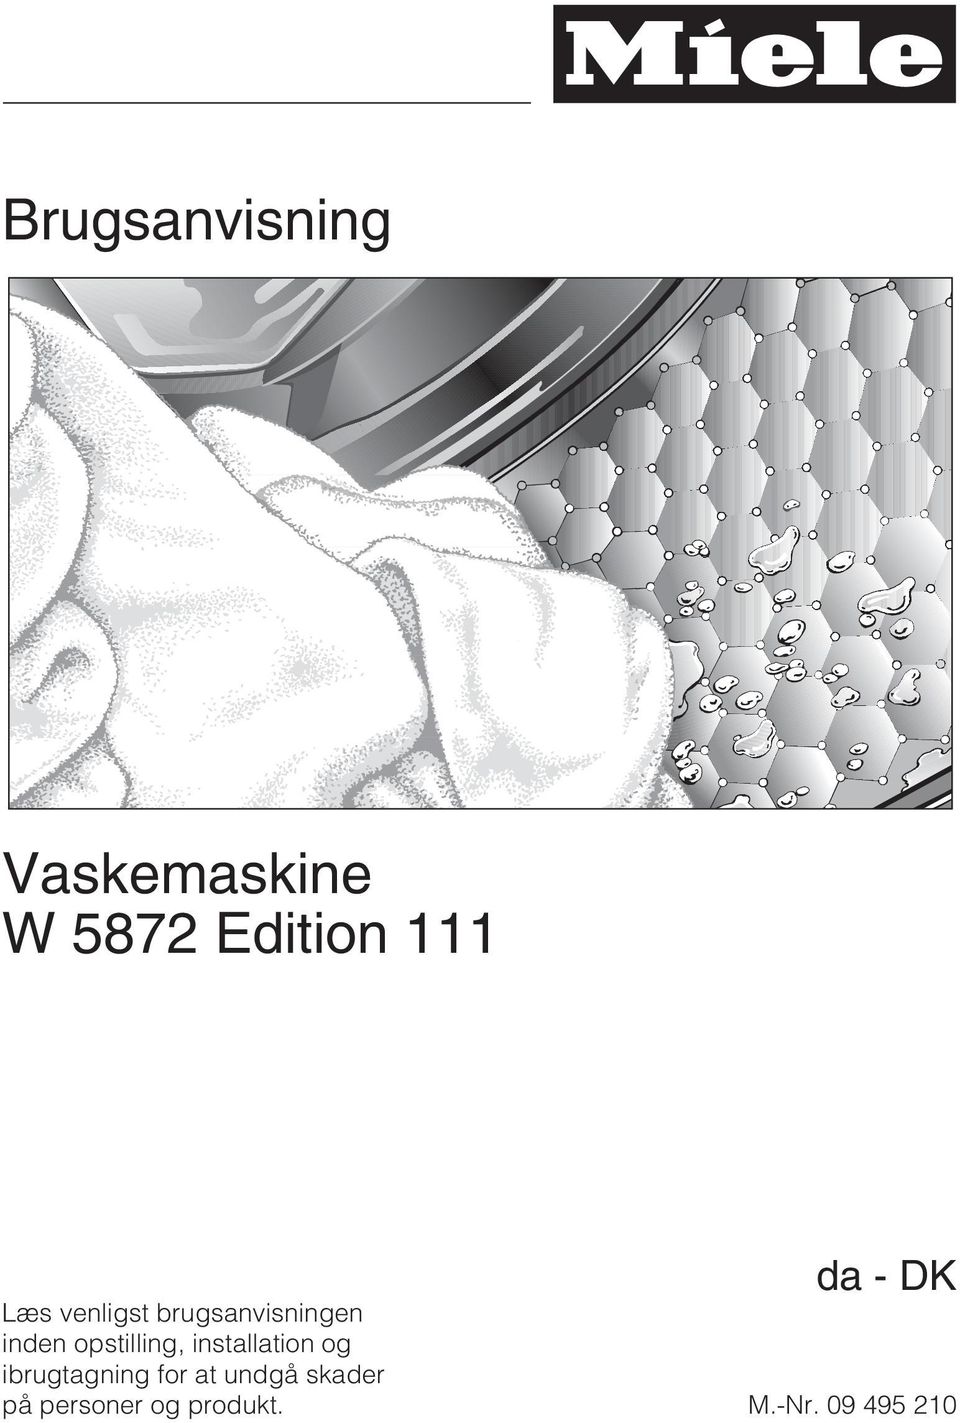 Brugsanvisning. Vaskemaskine W 5872 Edition 111. da-dk - PDF Gratis download